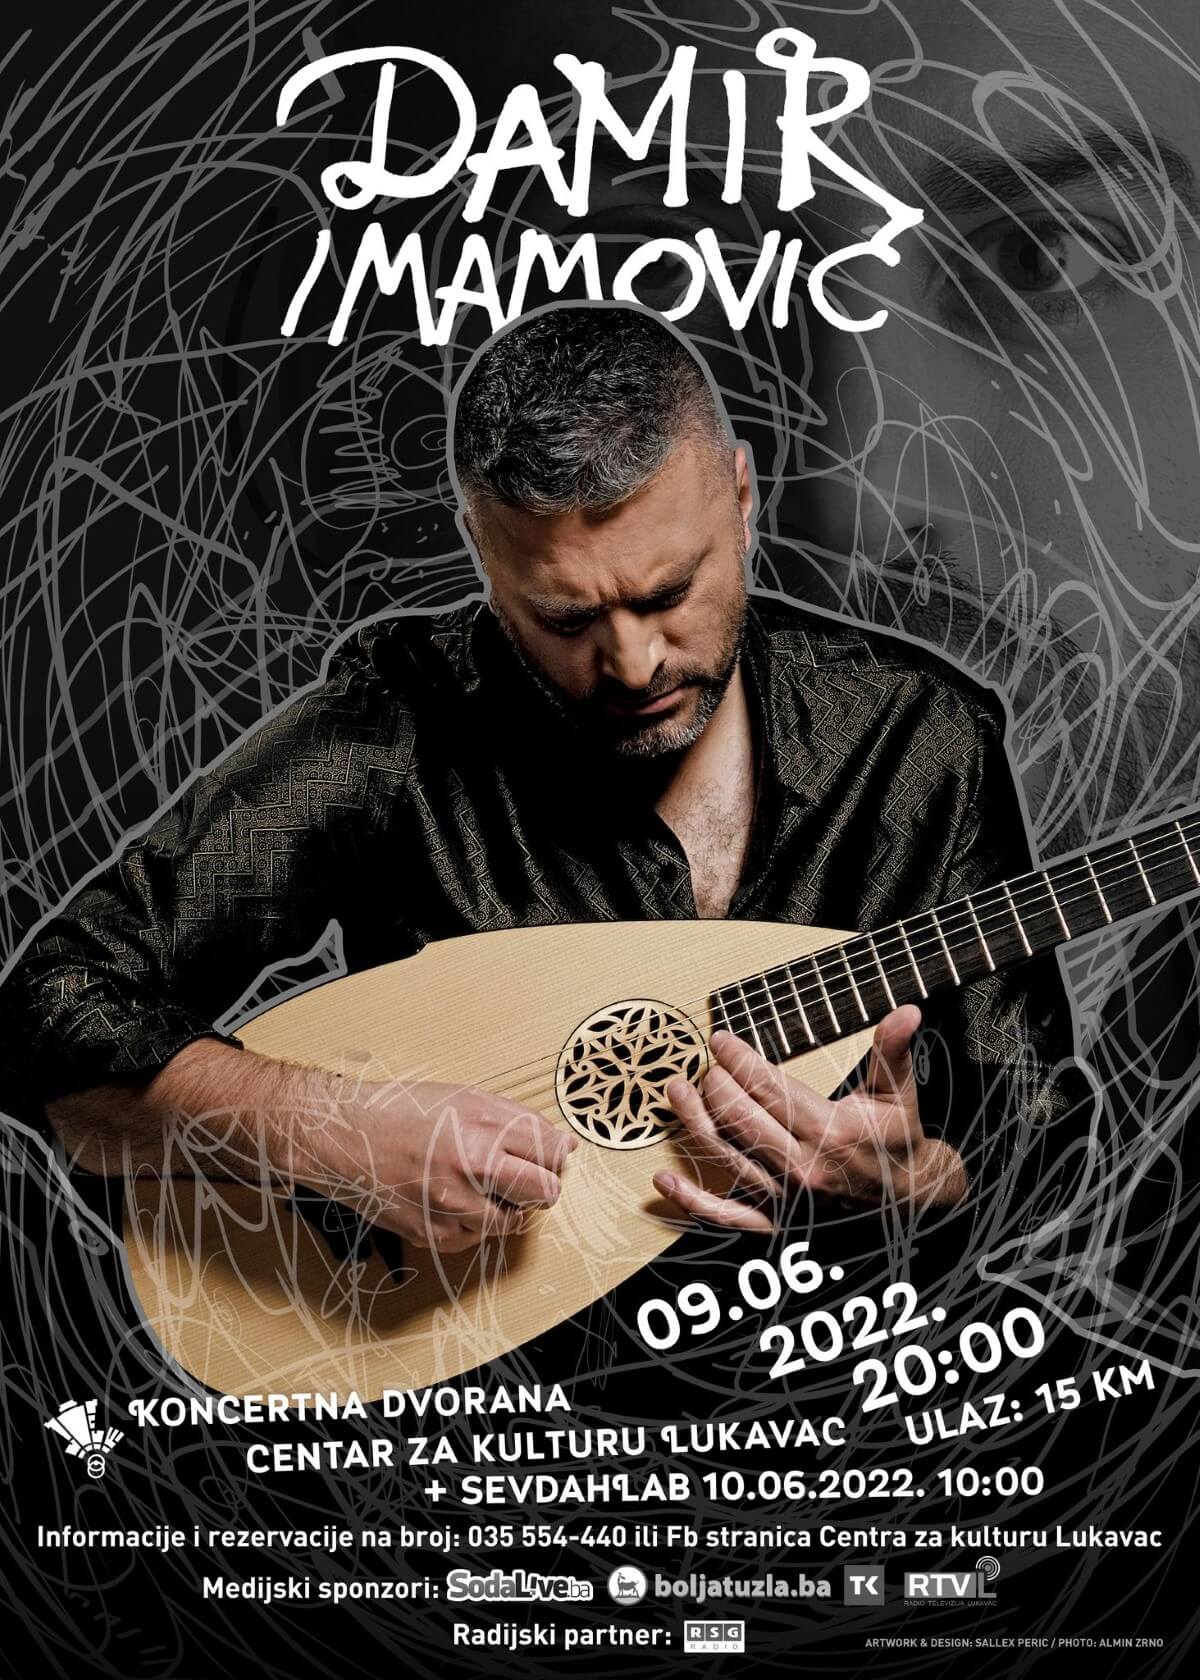 Damir Imamović – Najbolji muzičar Evrope u 2021. godini, 9. juna u Lukavcu